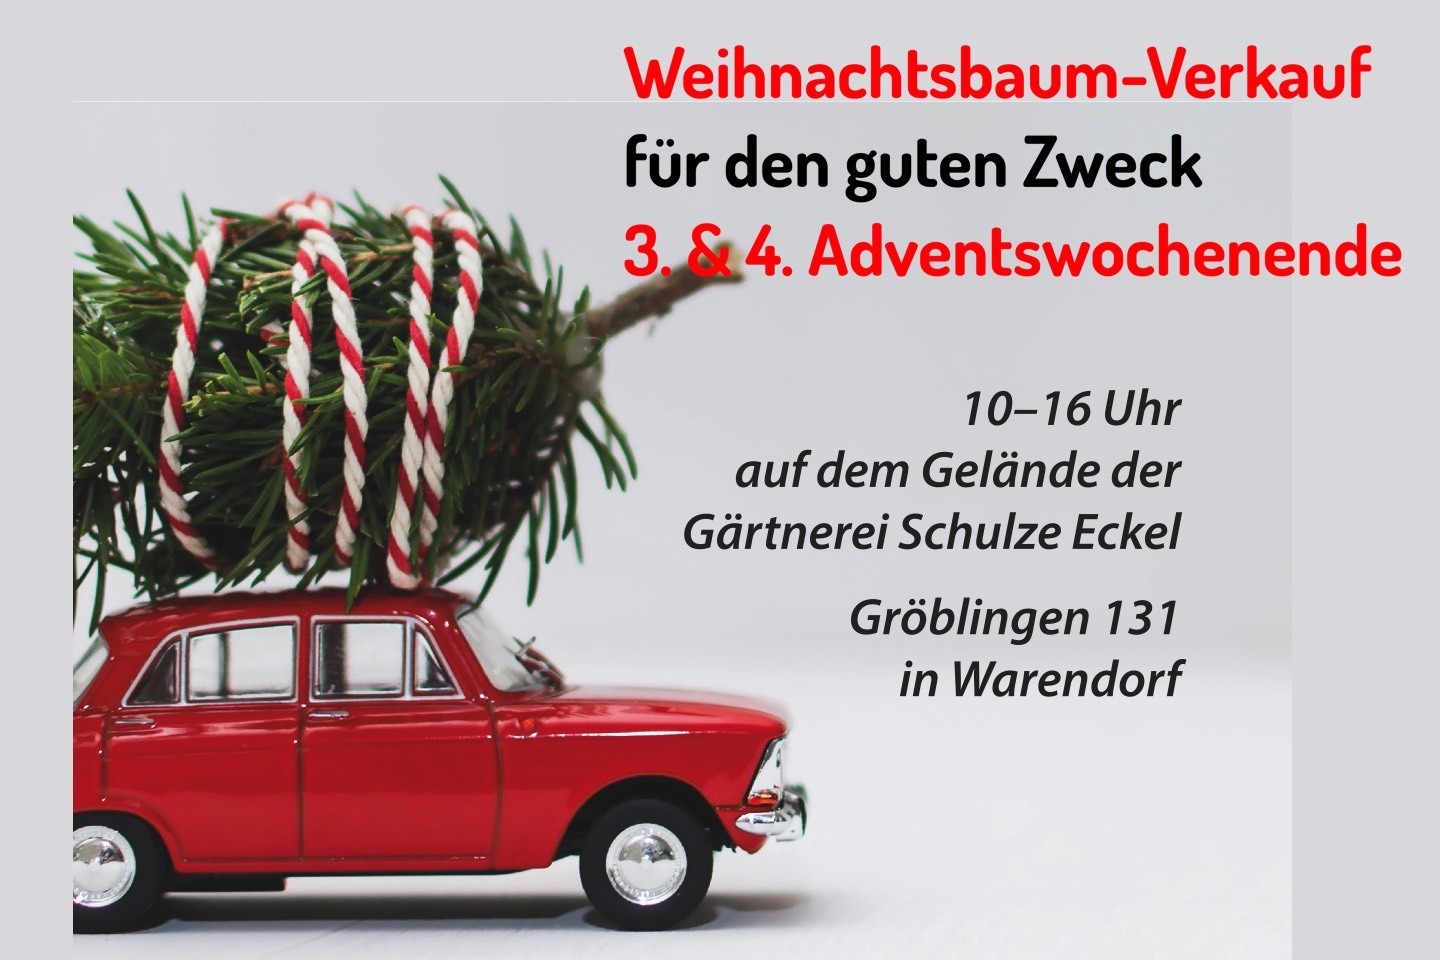 Roundtable,Weihnachtsbäume,Weihnachtsbaumverkauf,Schulze Eckel,Warendorf,Roundtable 230 WAF,